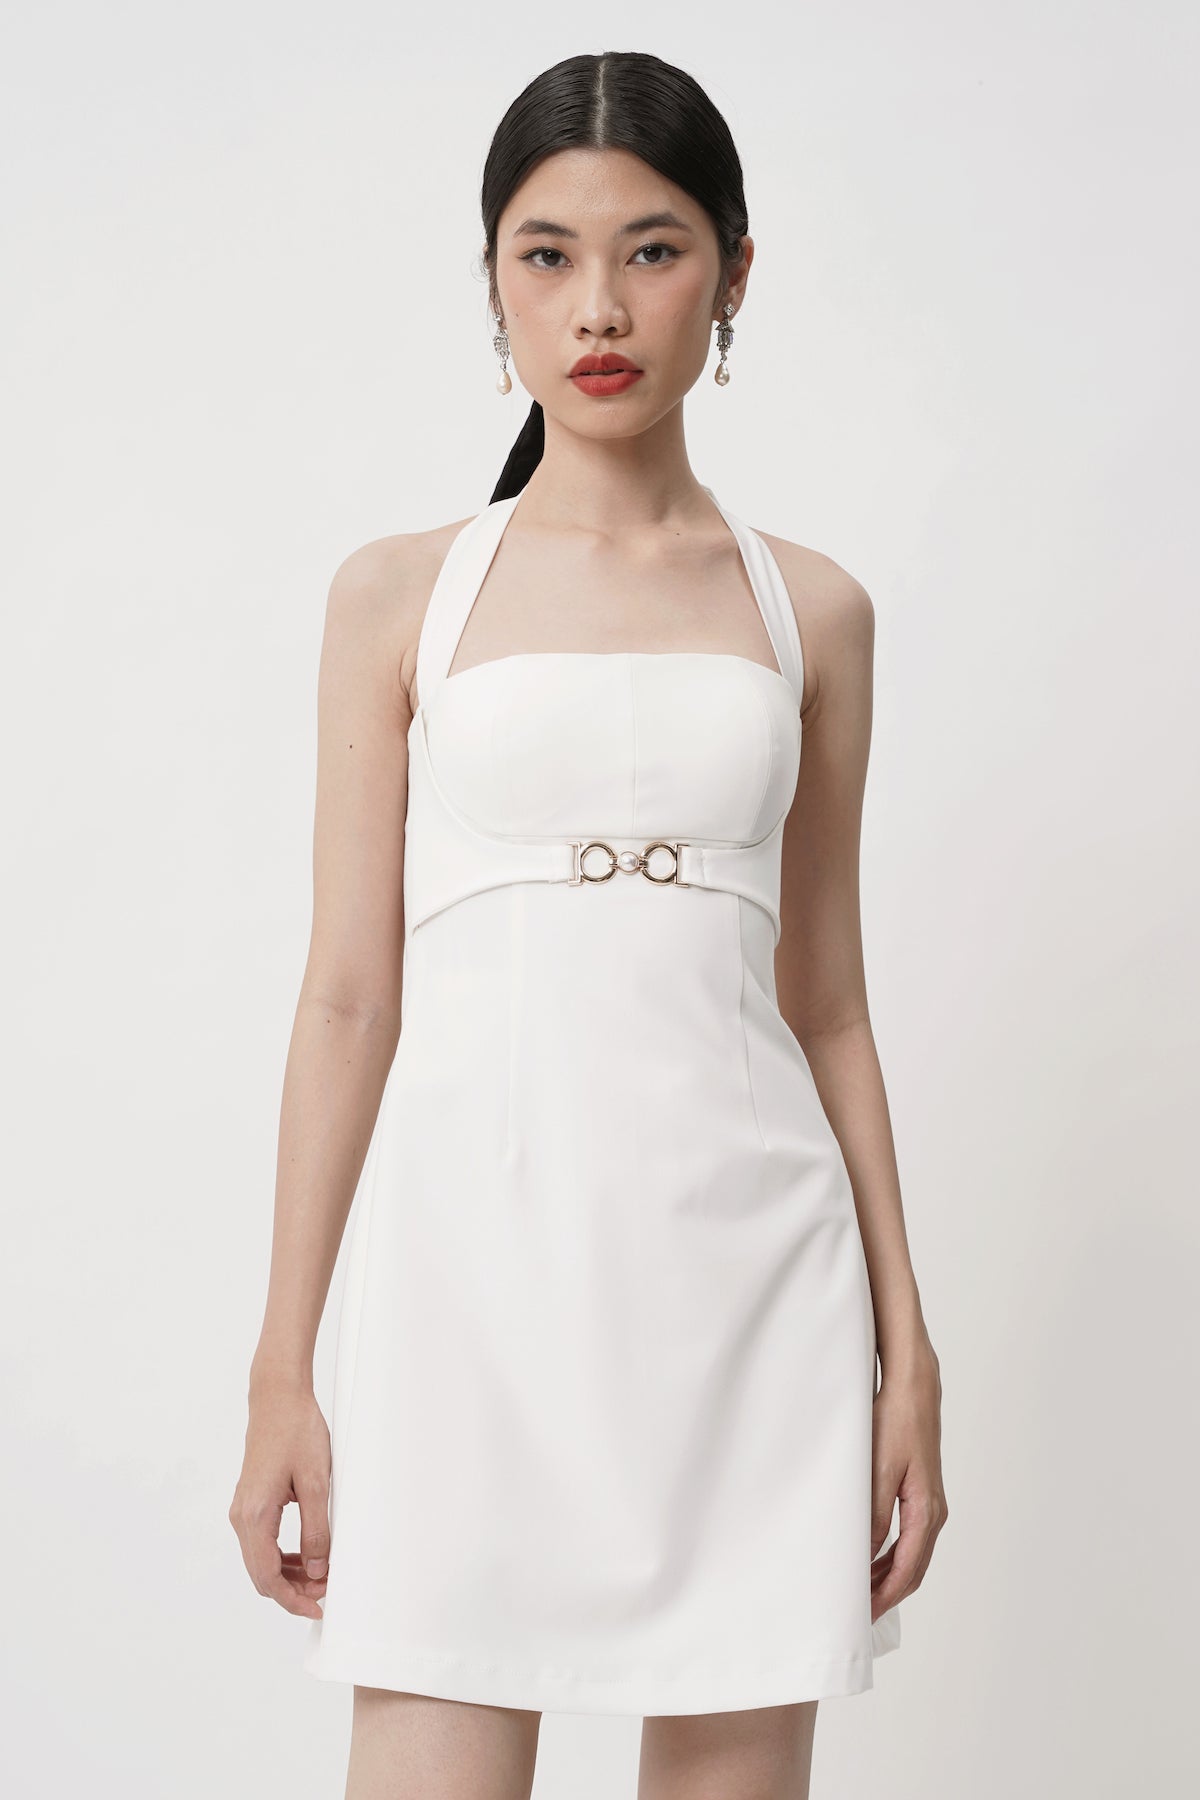 Charmed Dress In White (3 LEFT)